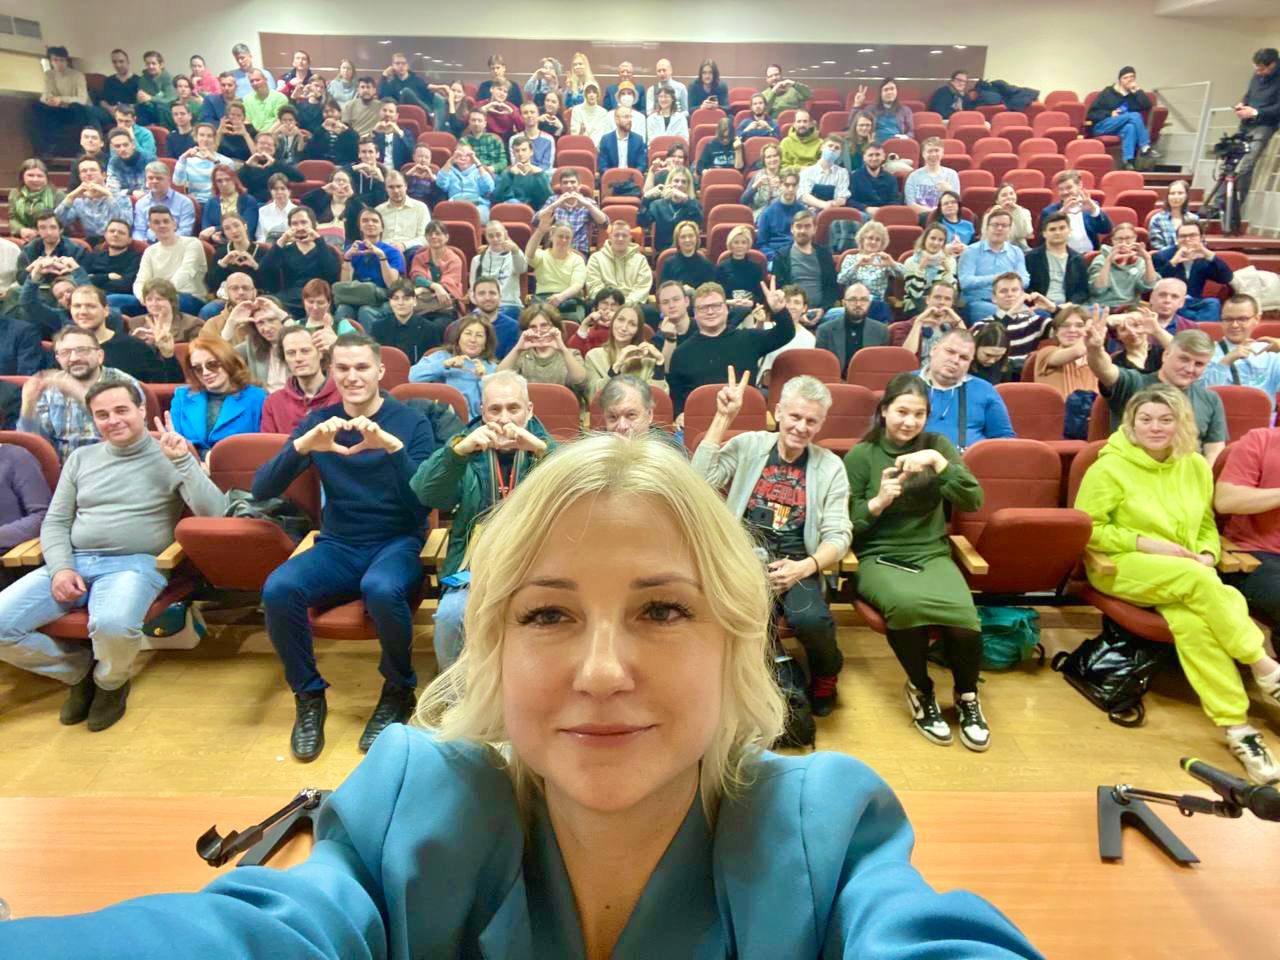 Екатерина Дунцова со сторонниками ее партии "Рассвет", фото из ее телеграм-канала любезно предоставлено для публикации Spektr.Press